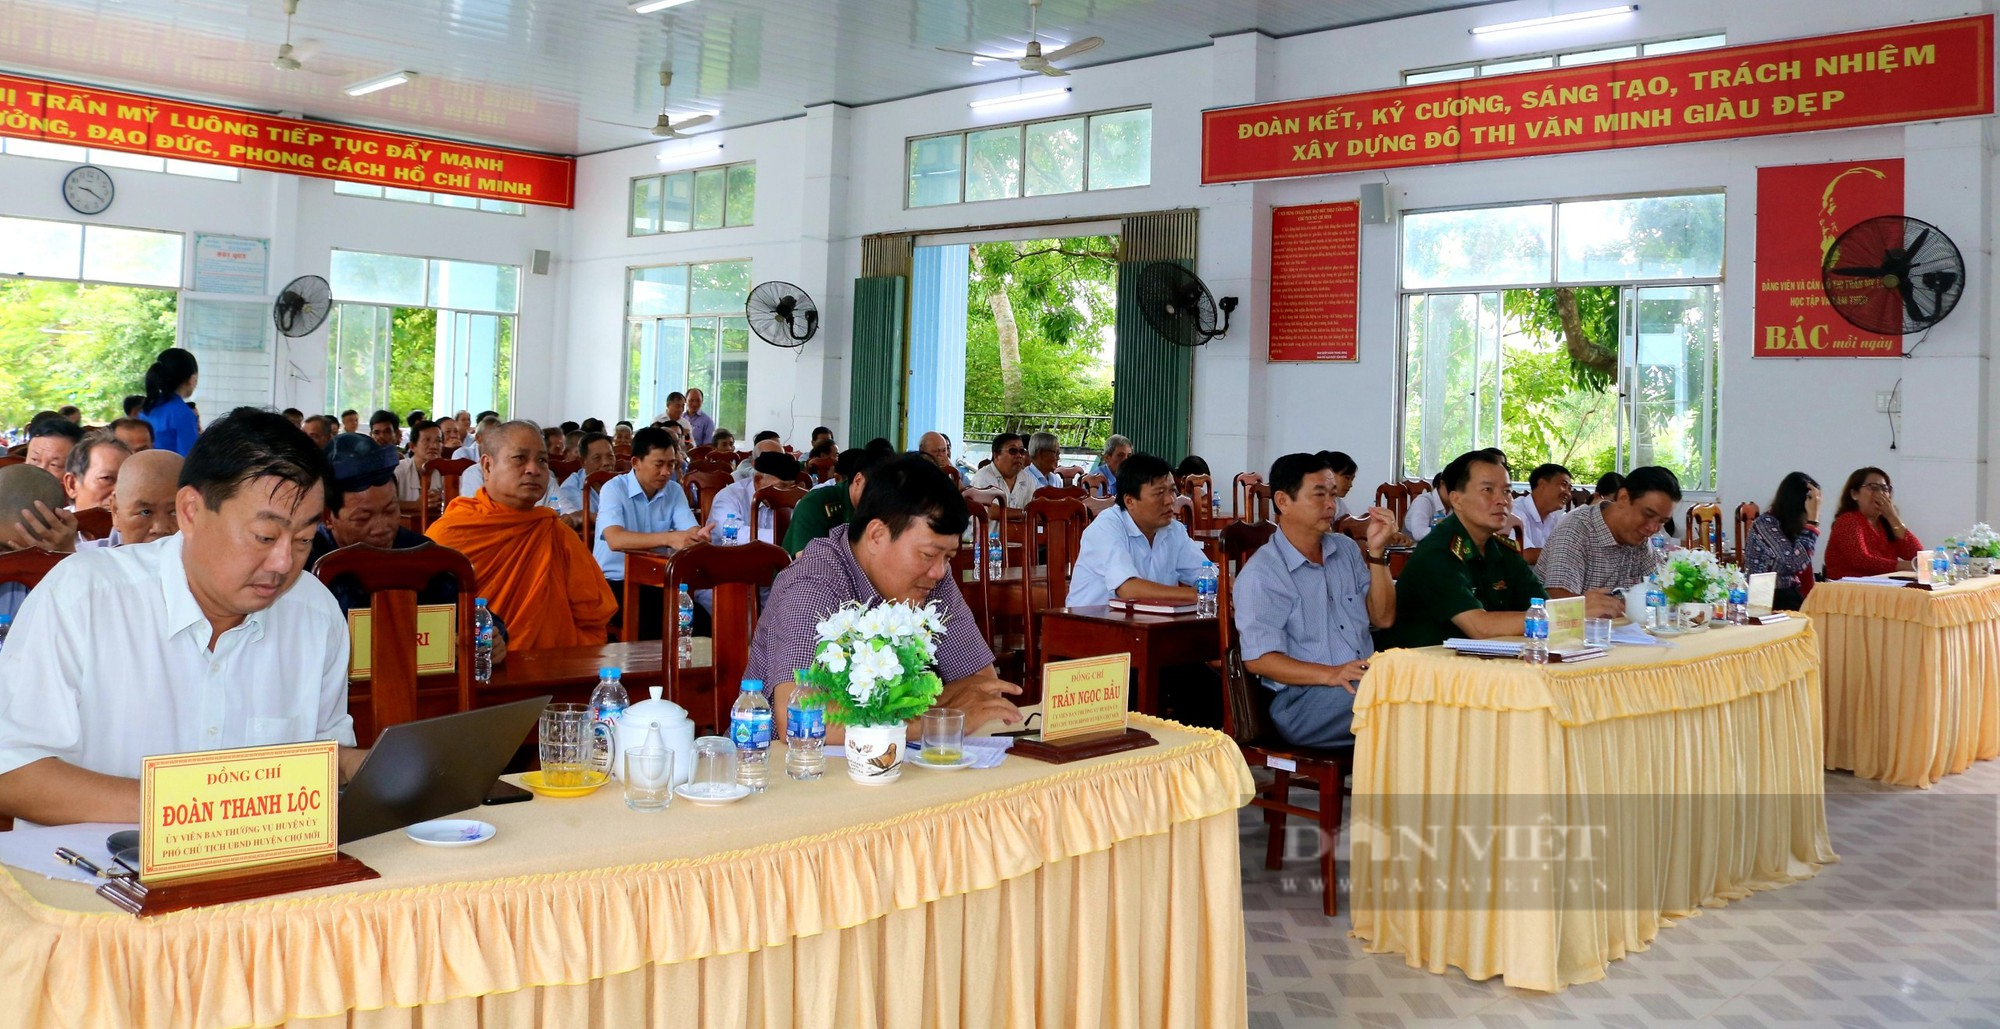 Chủ tịch Hội NDVN và đoàn ĐBQH tỉnh An Giang tiếp xúc cử tri sau Kỳ họp thứ năm tại huyện Chợ Mới - Ảnh 2.